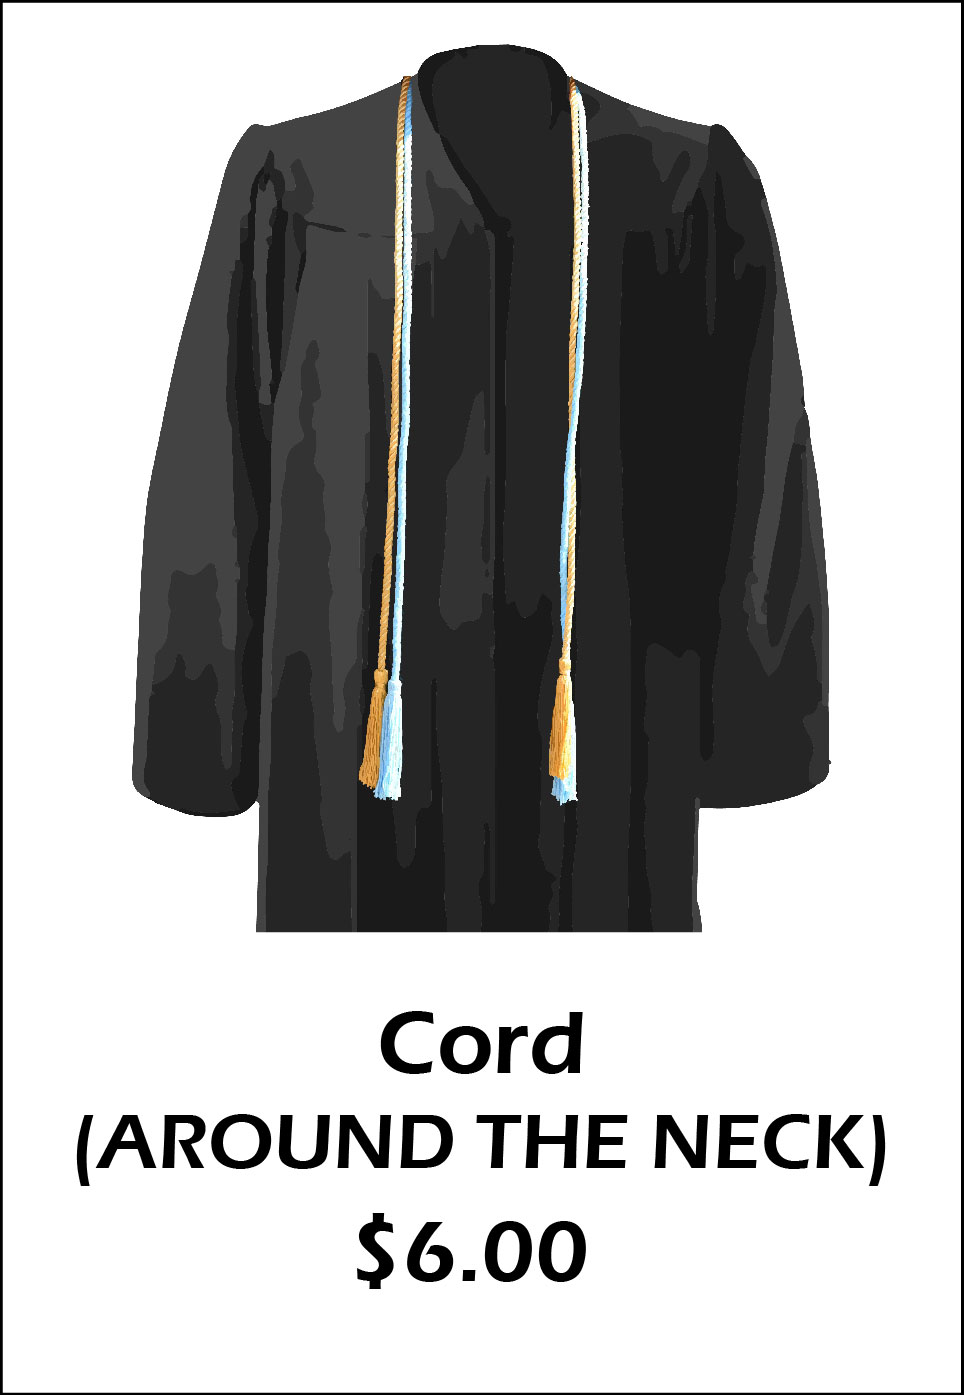 Cord (Around the neck) - $6